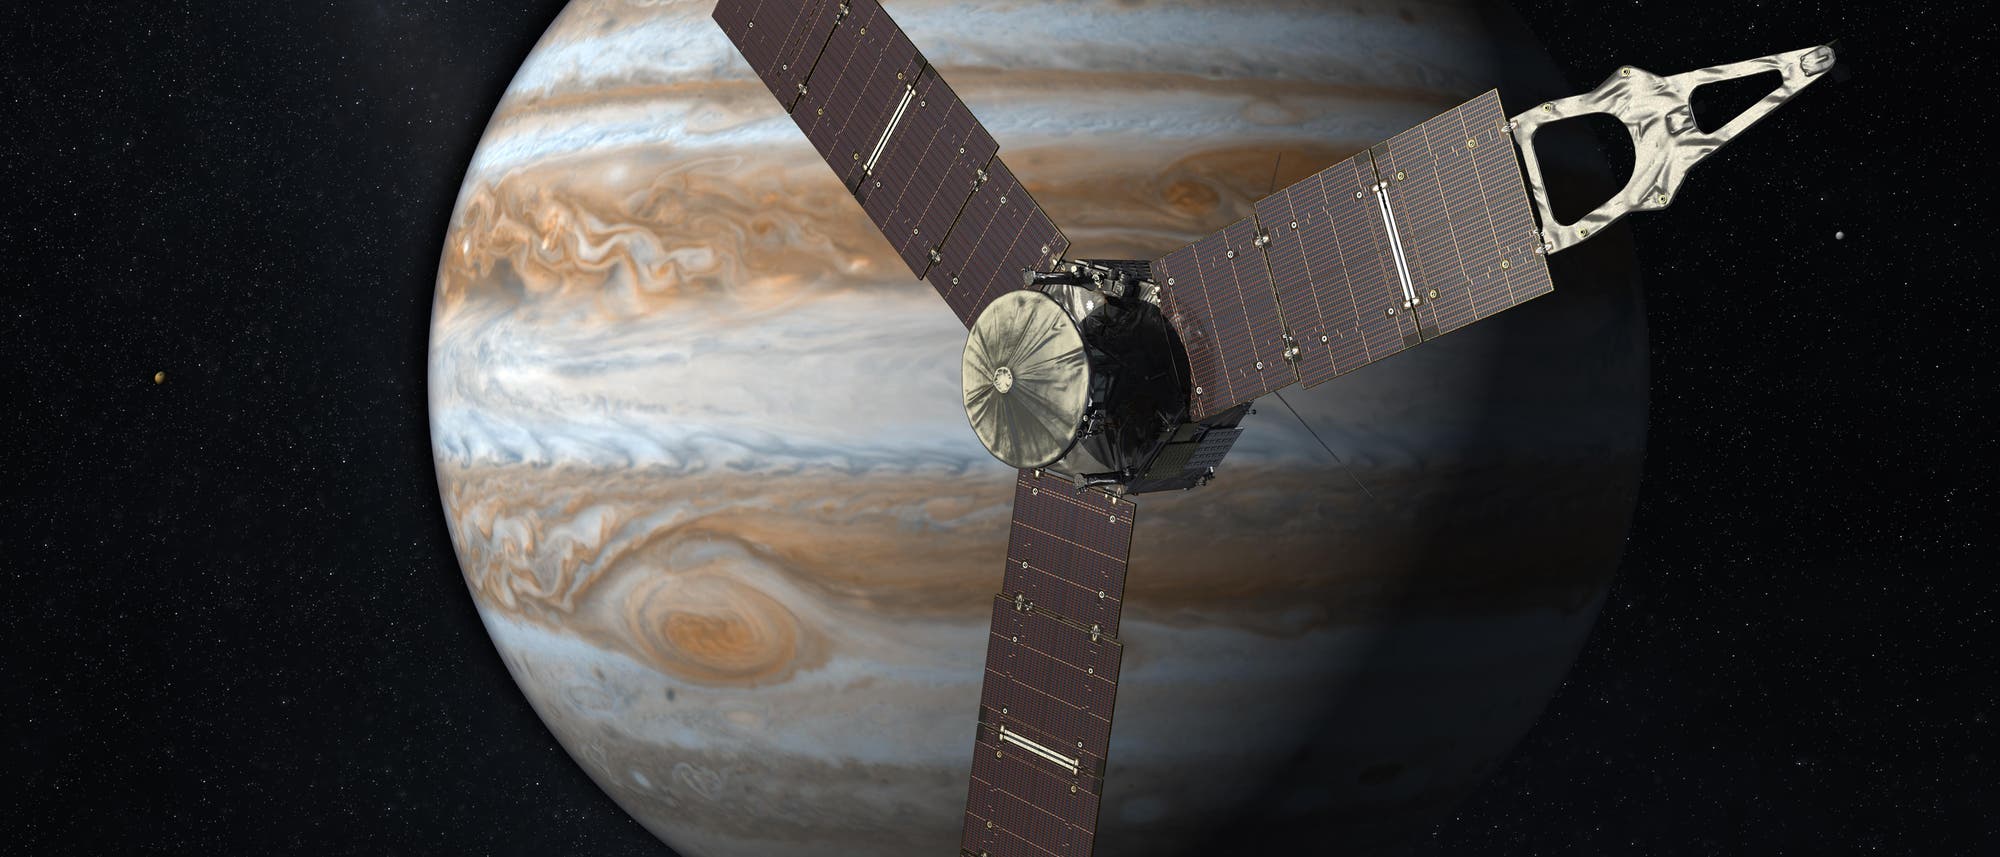 Künstlerische Darstellung der Sonde Juno vor dem Jupiter